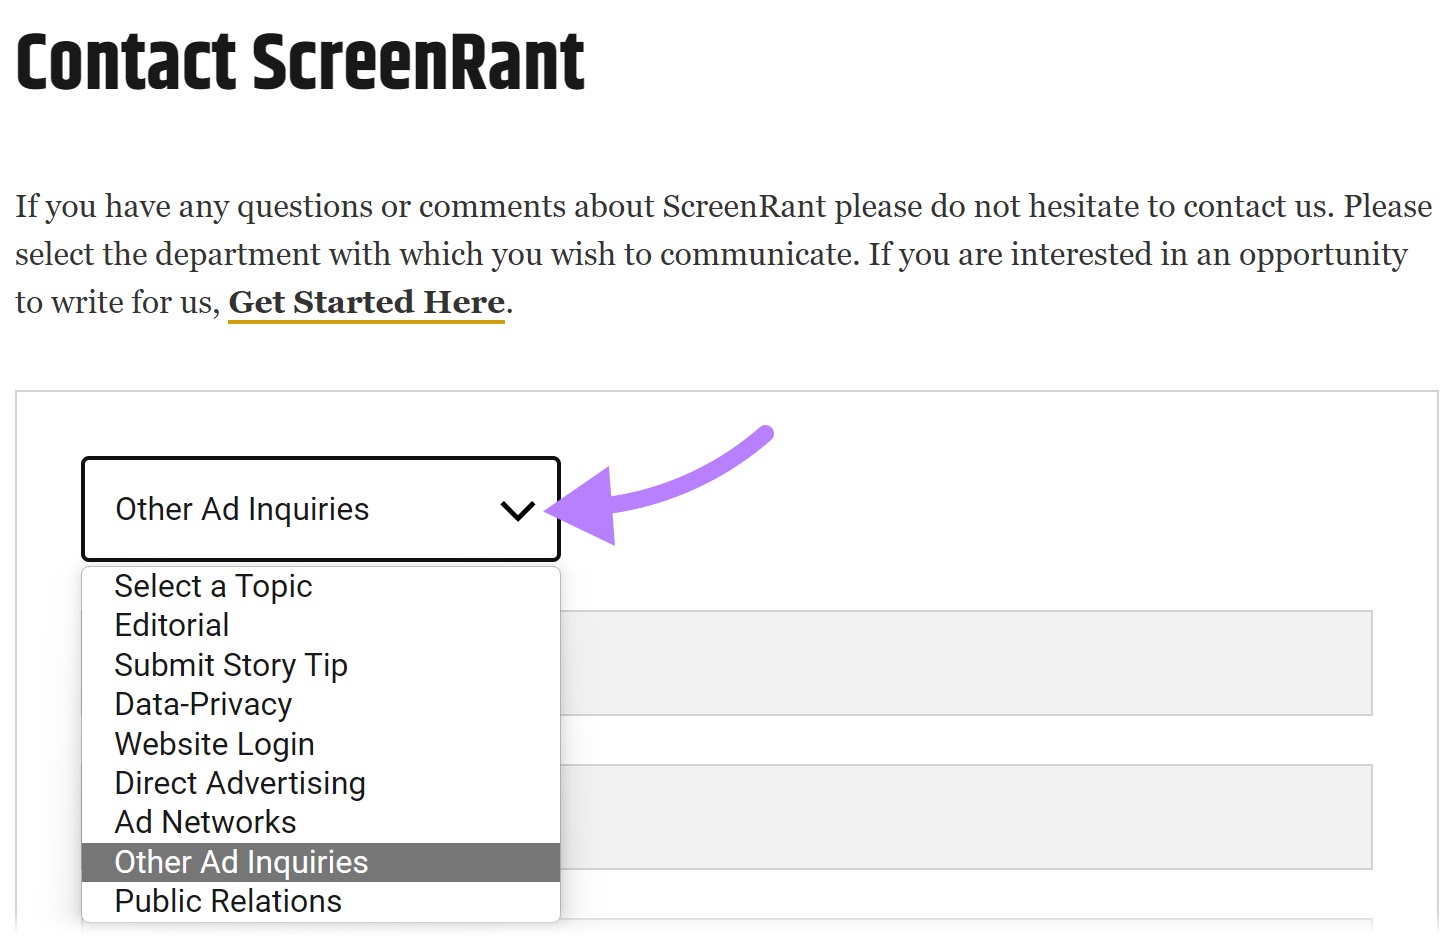 "Contact ScreenRant" form